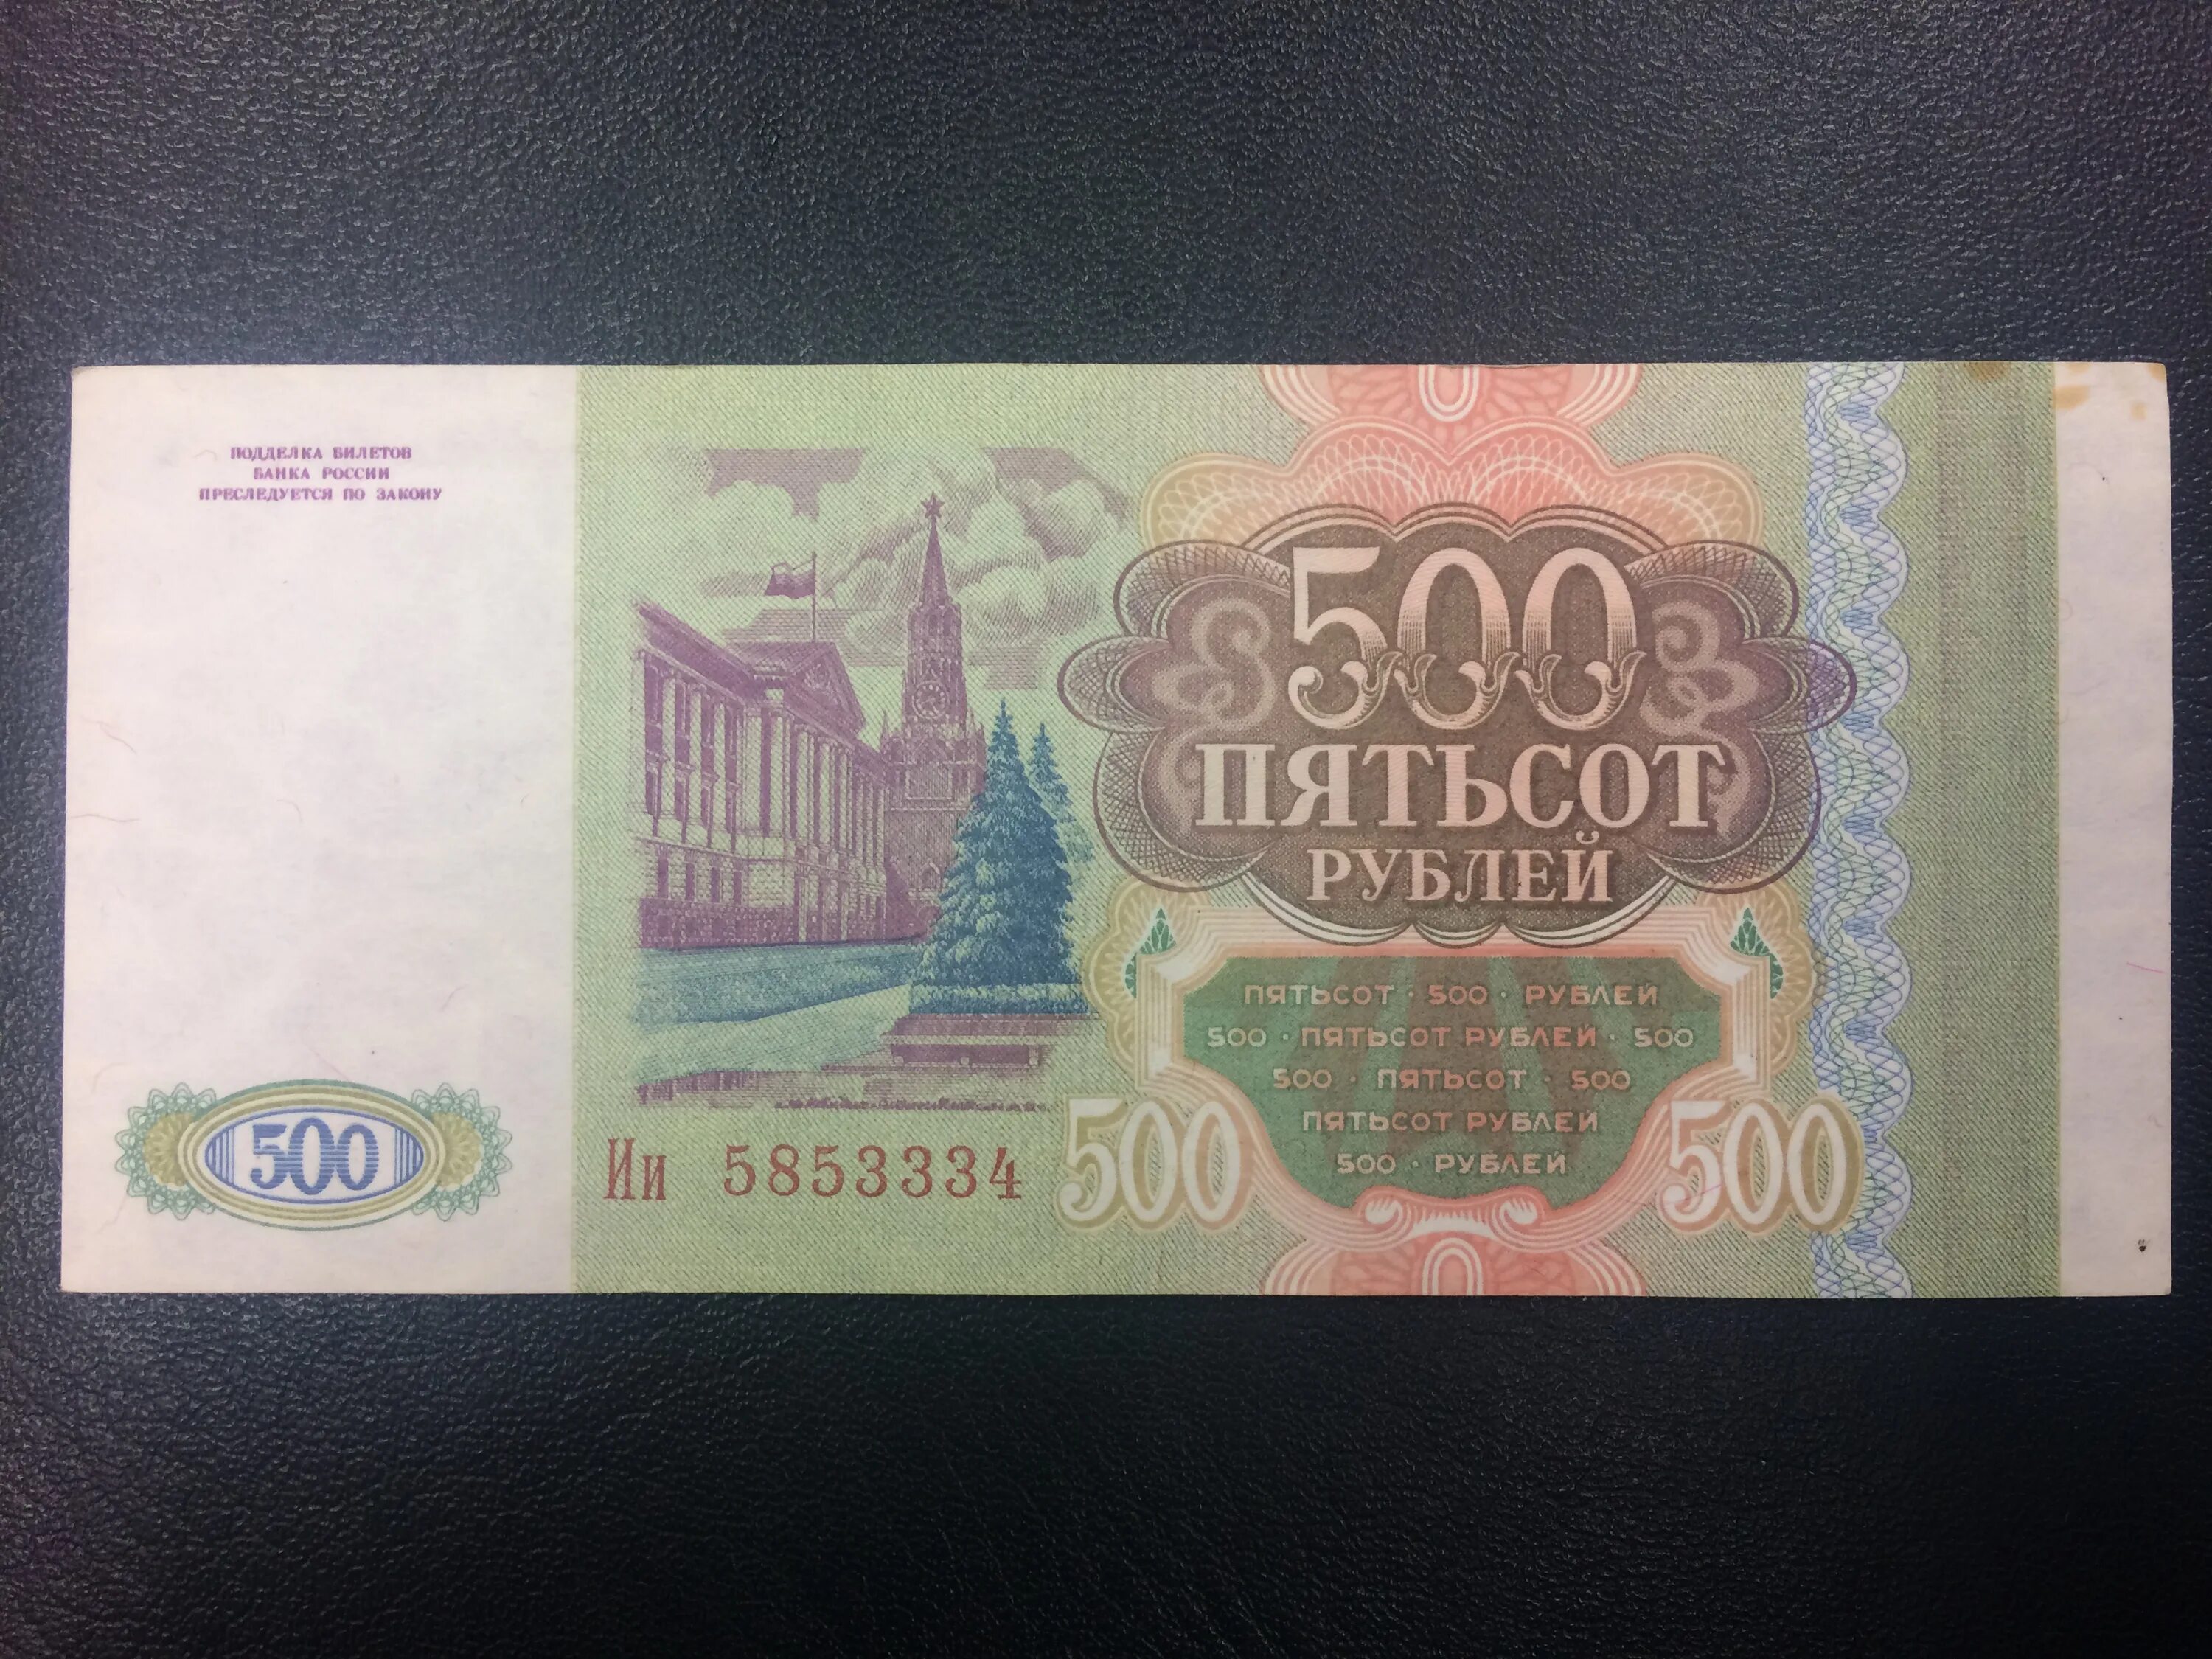 500 рублей плюс 500 рублей. 500 Рублей 1993. Купюра 500 рублей 1993 года. Пятьсот рублей 1993 года. Купюра 500 рублей 1993.